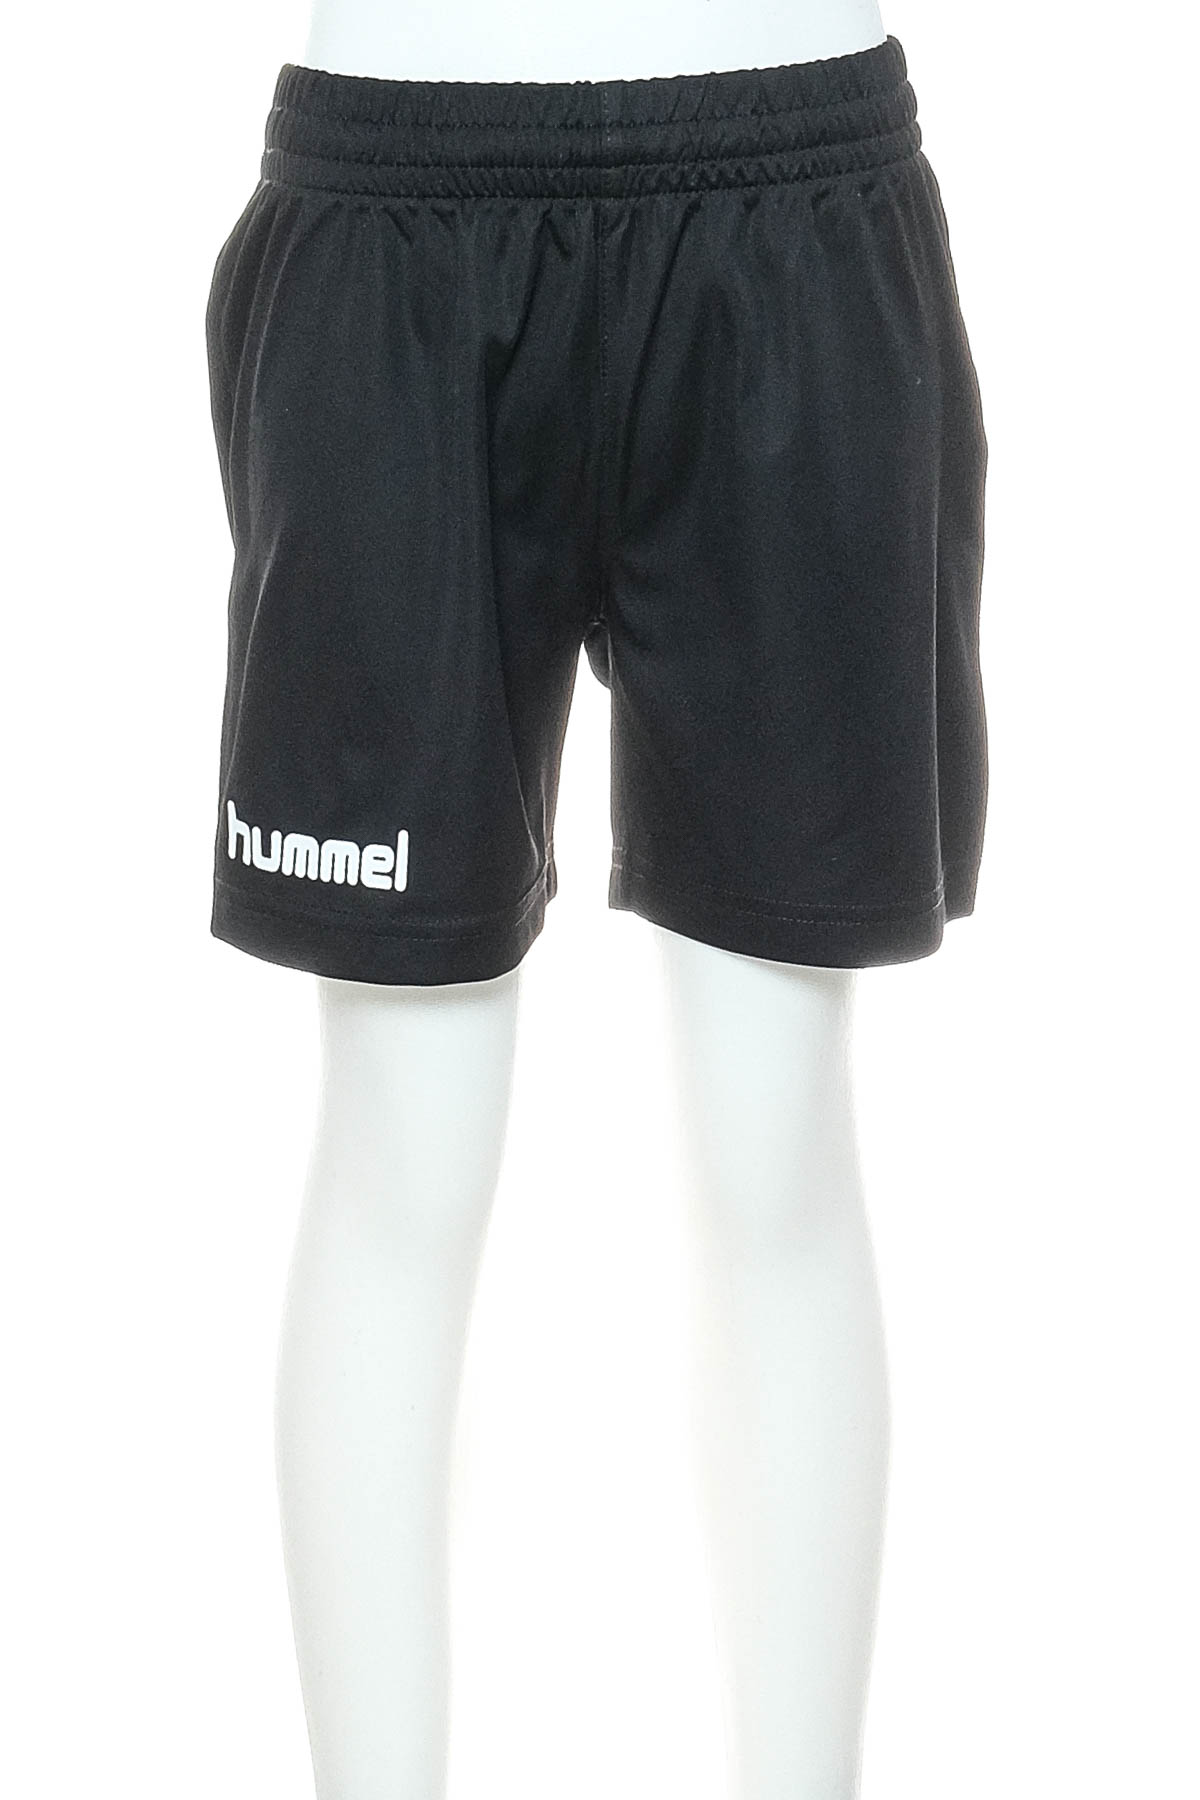 Къси панталони за момче - Hummel - 0